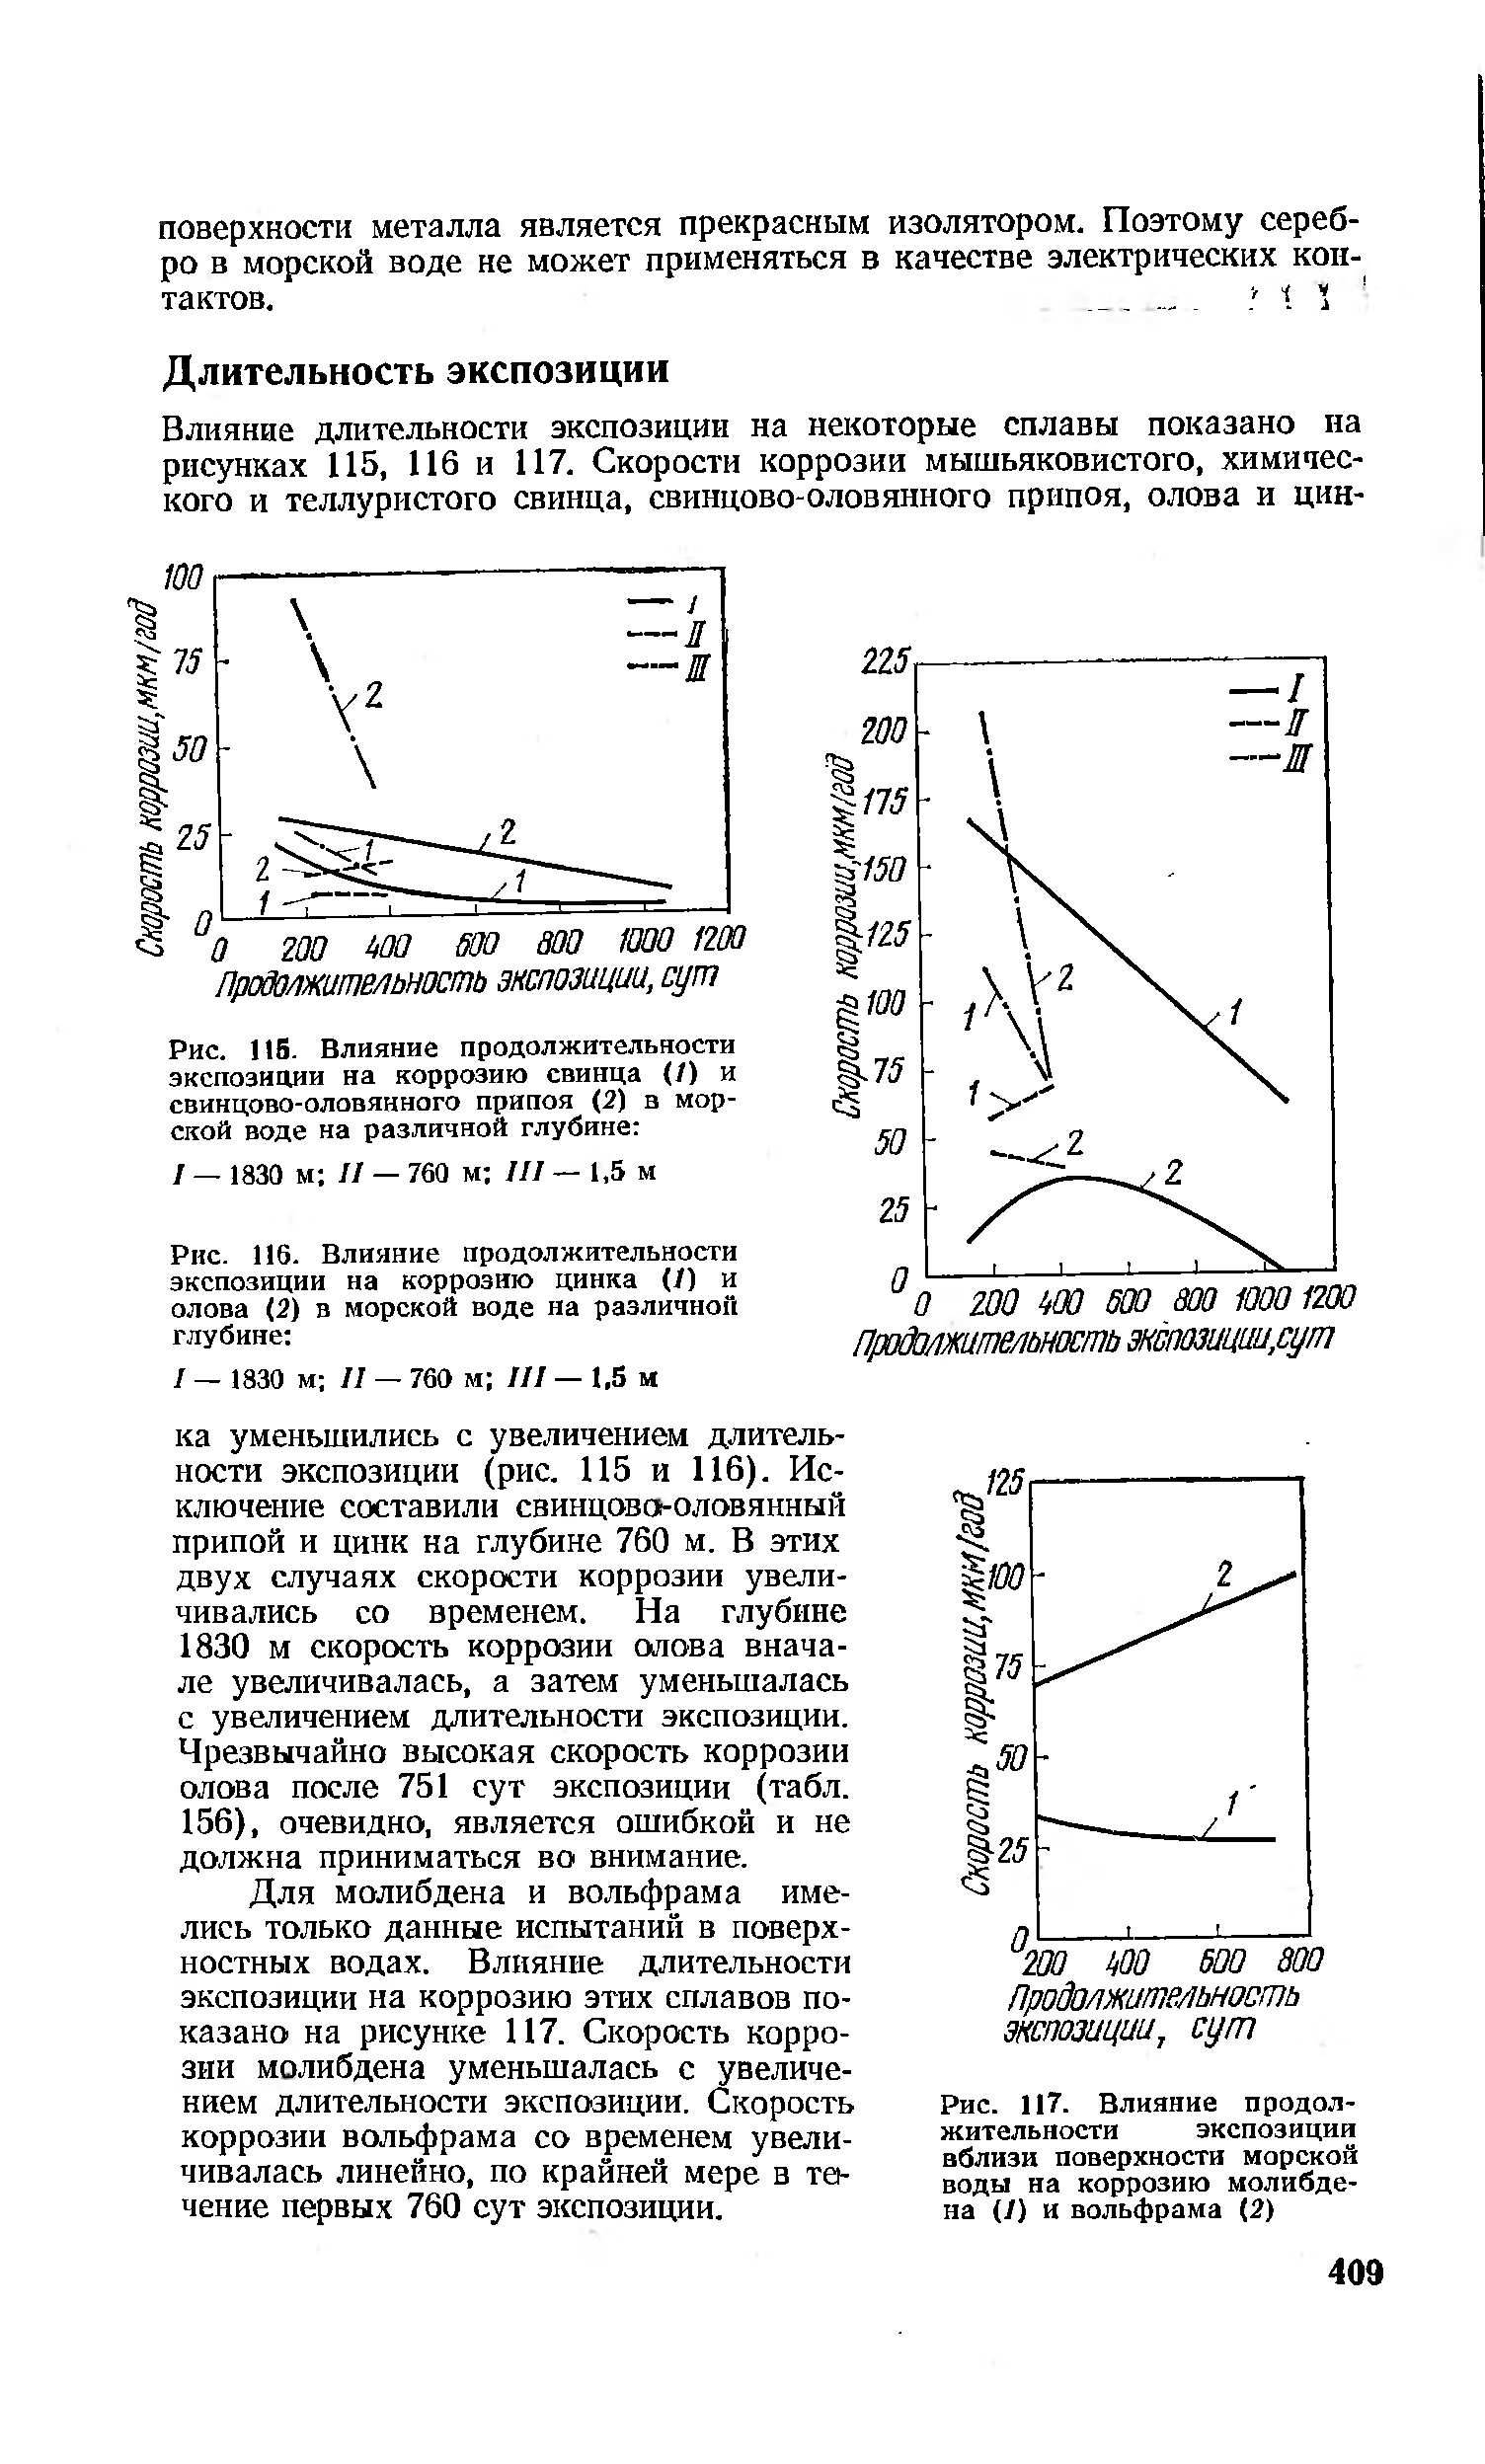 Рис. 116. Влияние продолжительности экспозиции на коррозию цинка (/) и олова (2) в морской воде на различной глубине 
